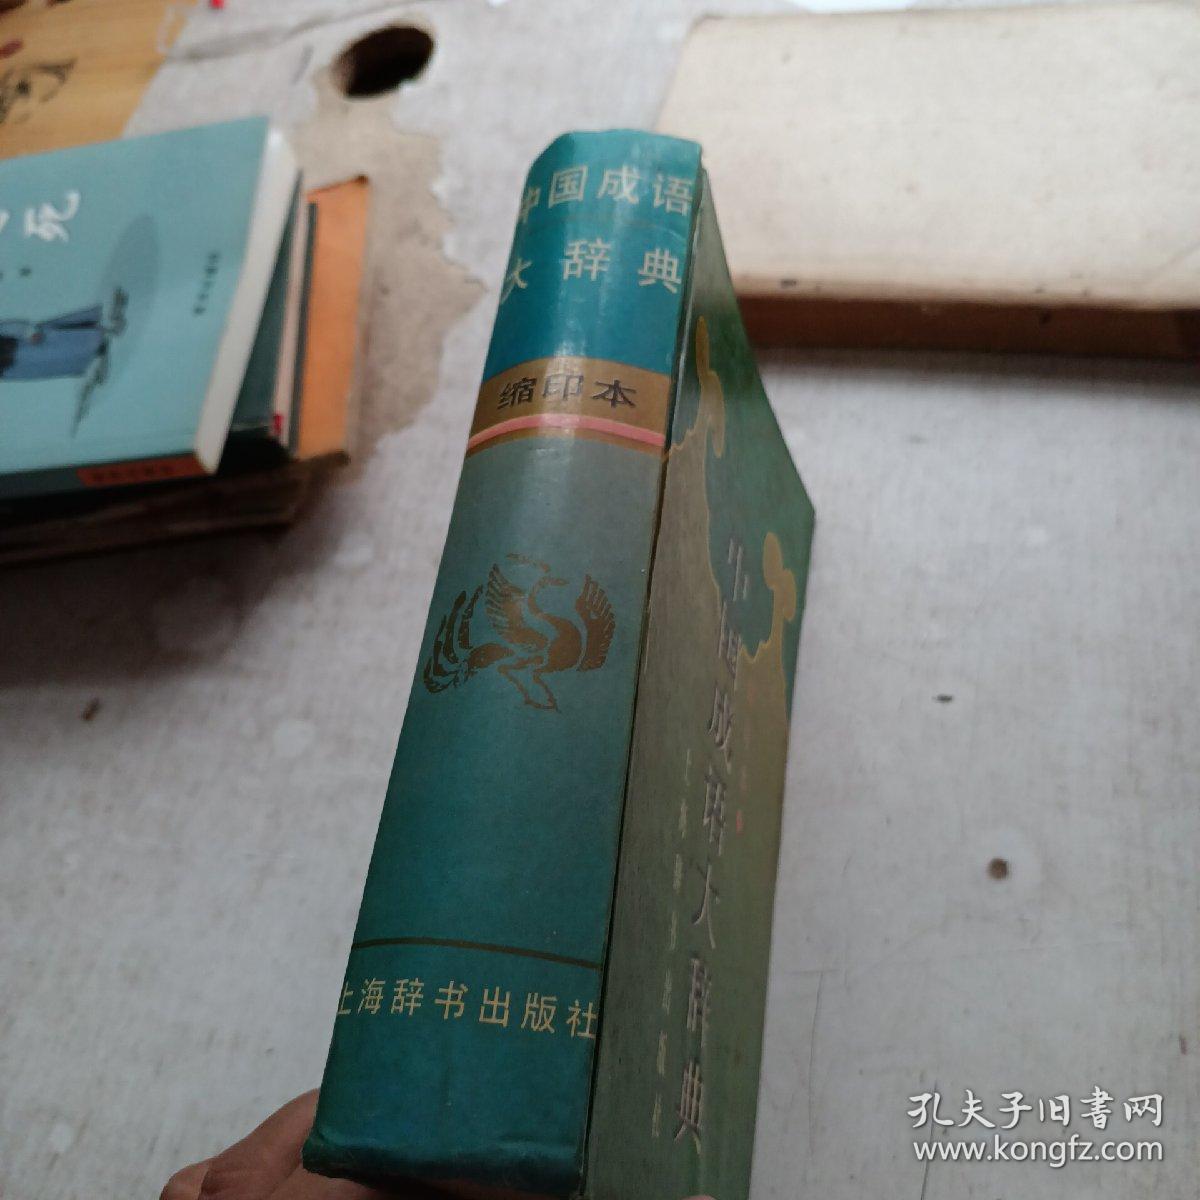 中国成语大辞典 上海辞书出版社 缩印本